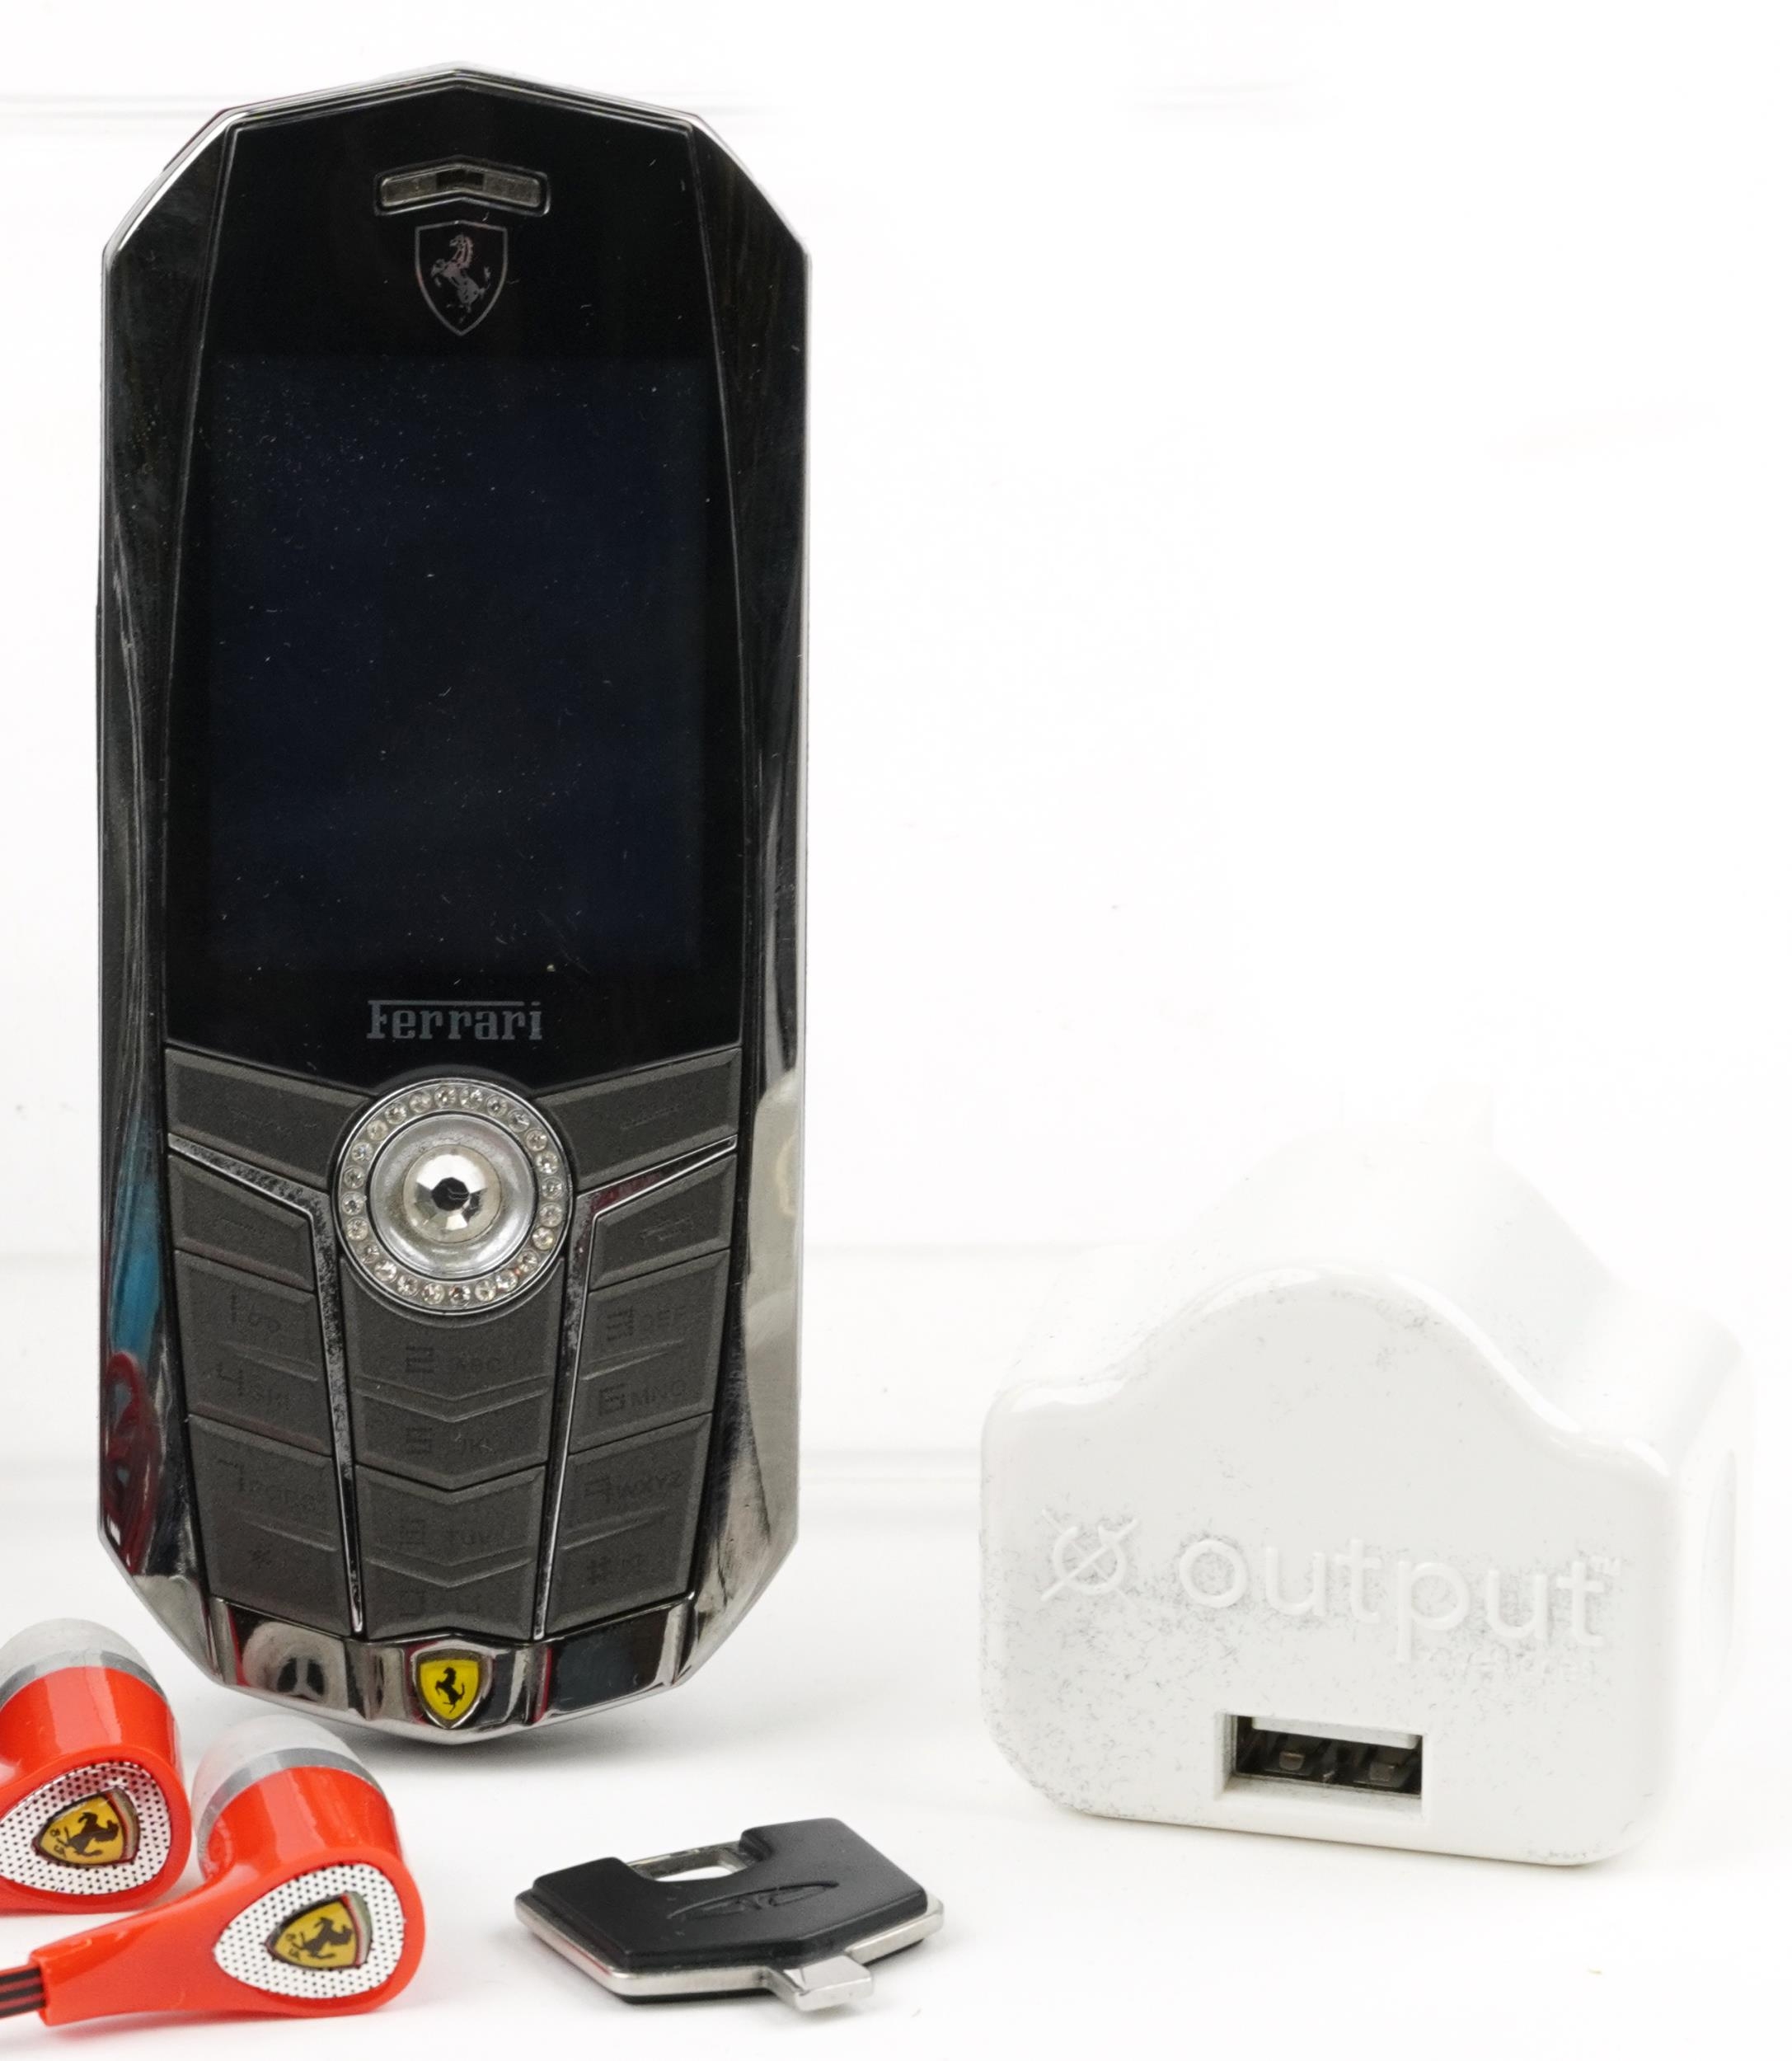 Cased Vertu Ferrari mobile phone and accessories - Image 3 of 6